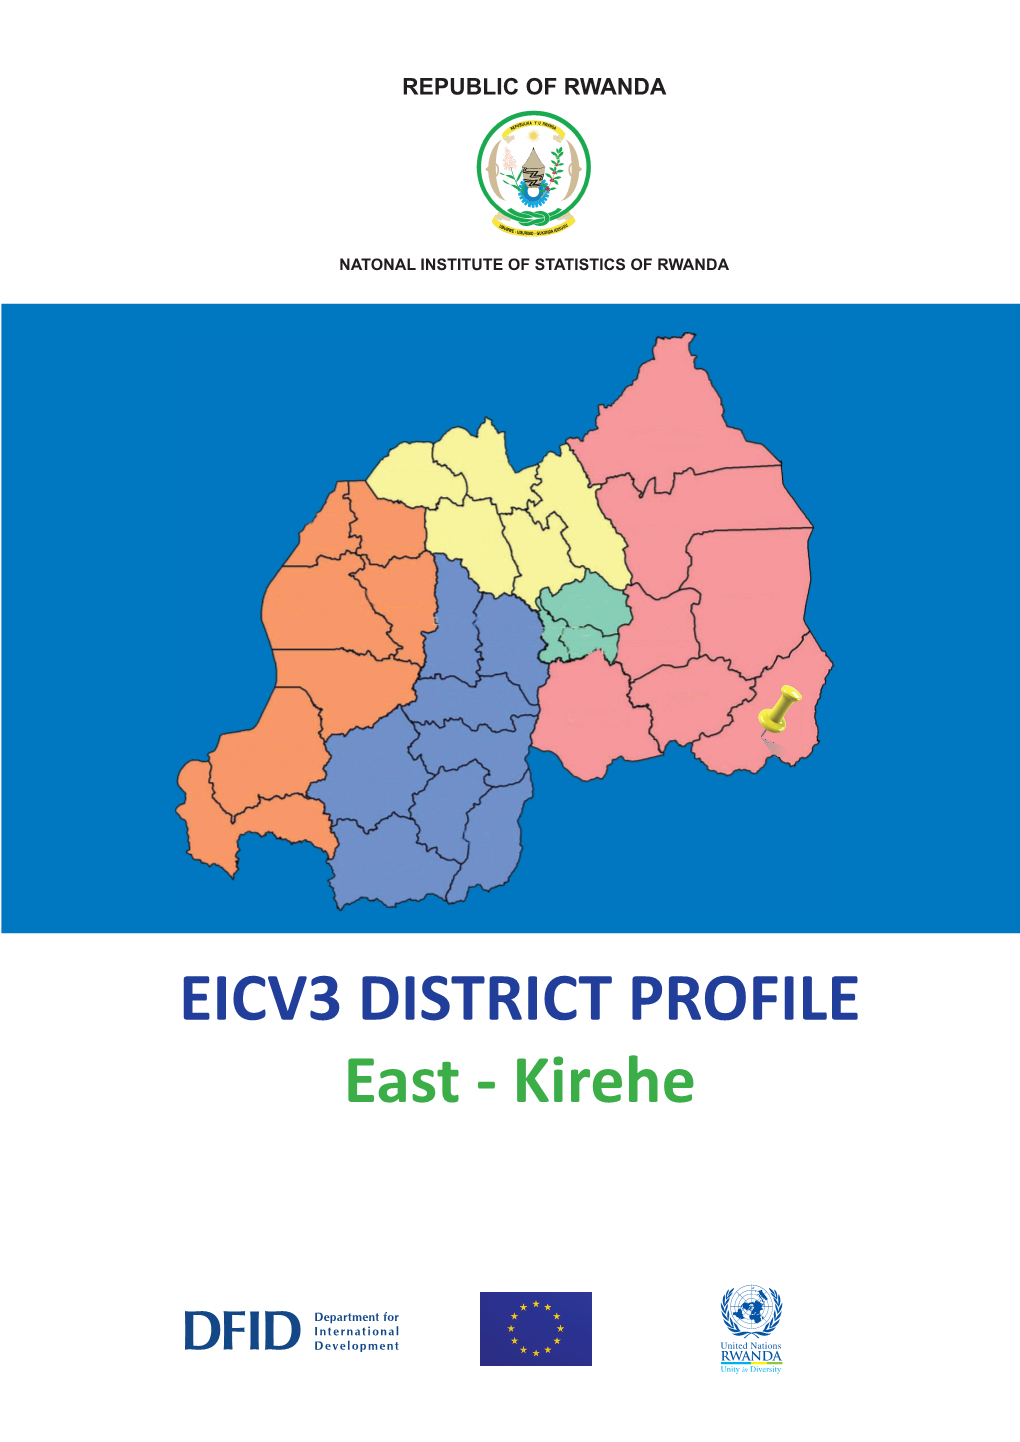 EICV3 DISTRICT PROFILE East - Kirehe